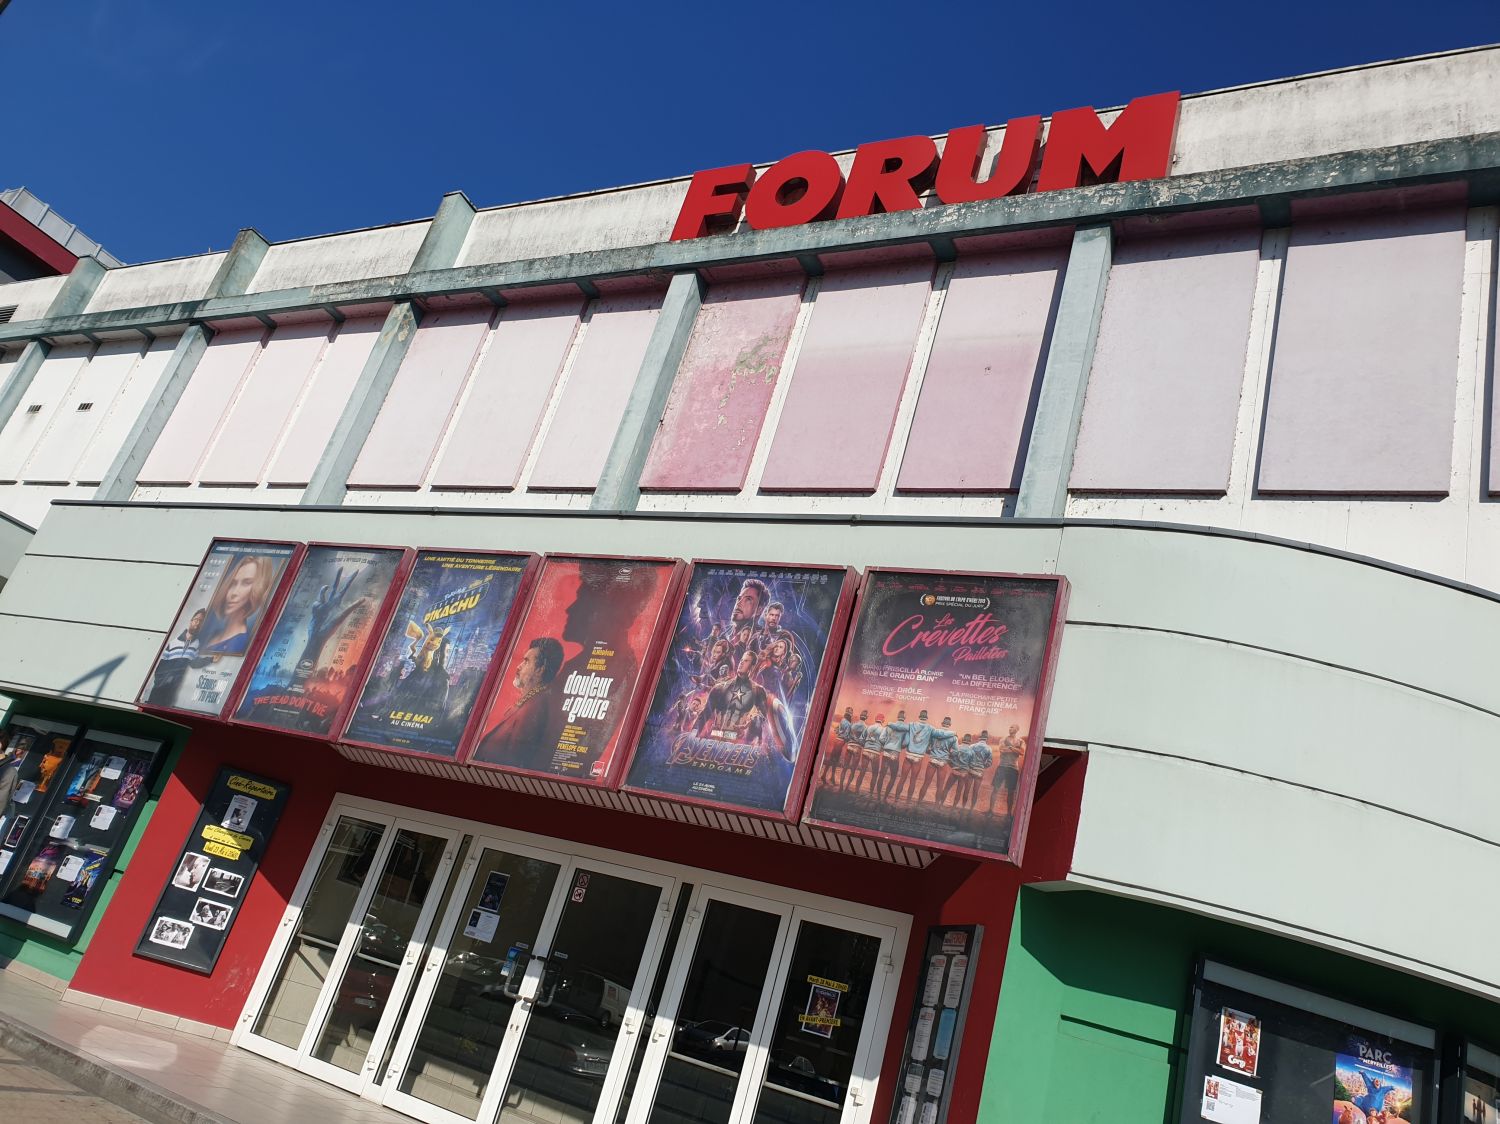 Les cinémas Forum de Sarreguemines vont repasser des classiques du cinéma tout au long de l’été